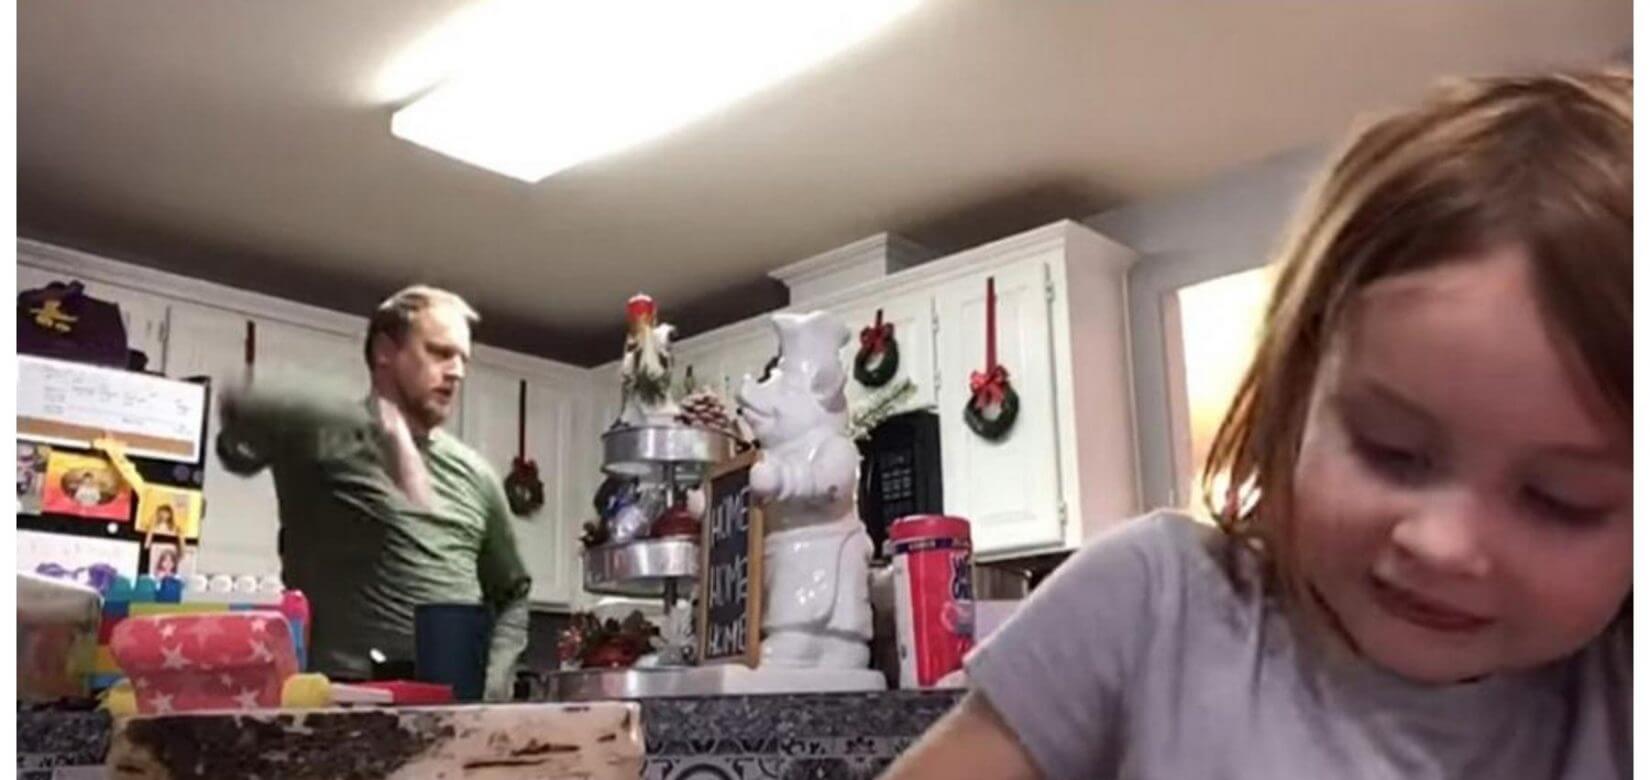 Ένας πατέρας χορεύει στην κουζίνα την ώρα που η κόρη του κάνει τηλεμάθημα και γίνεται viral! (video)